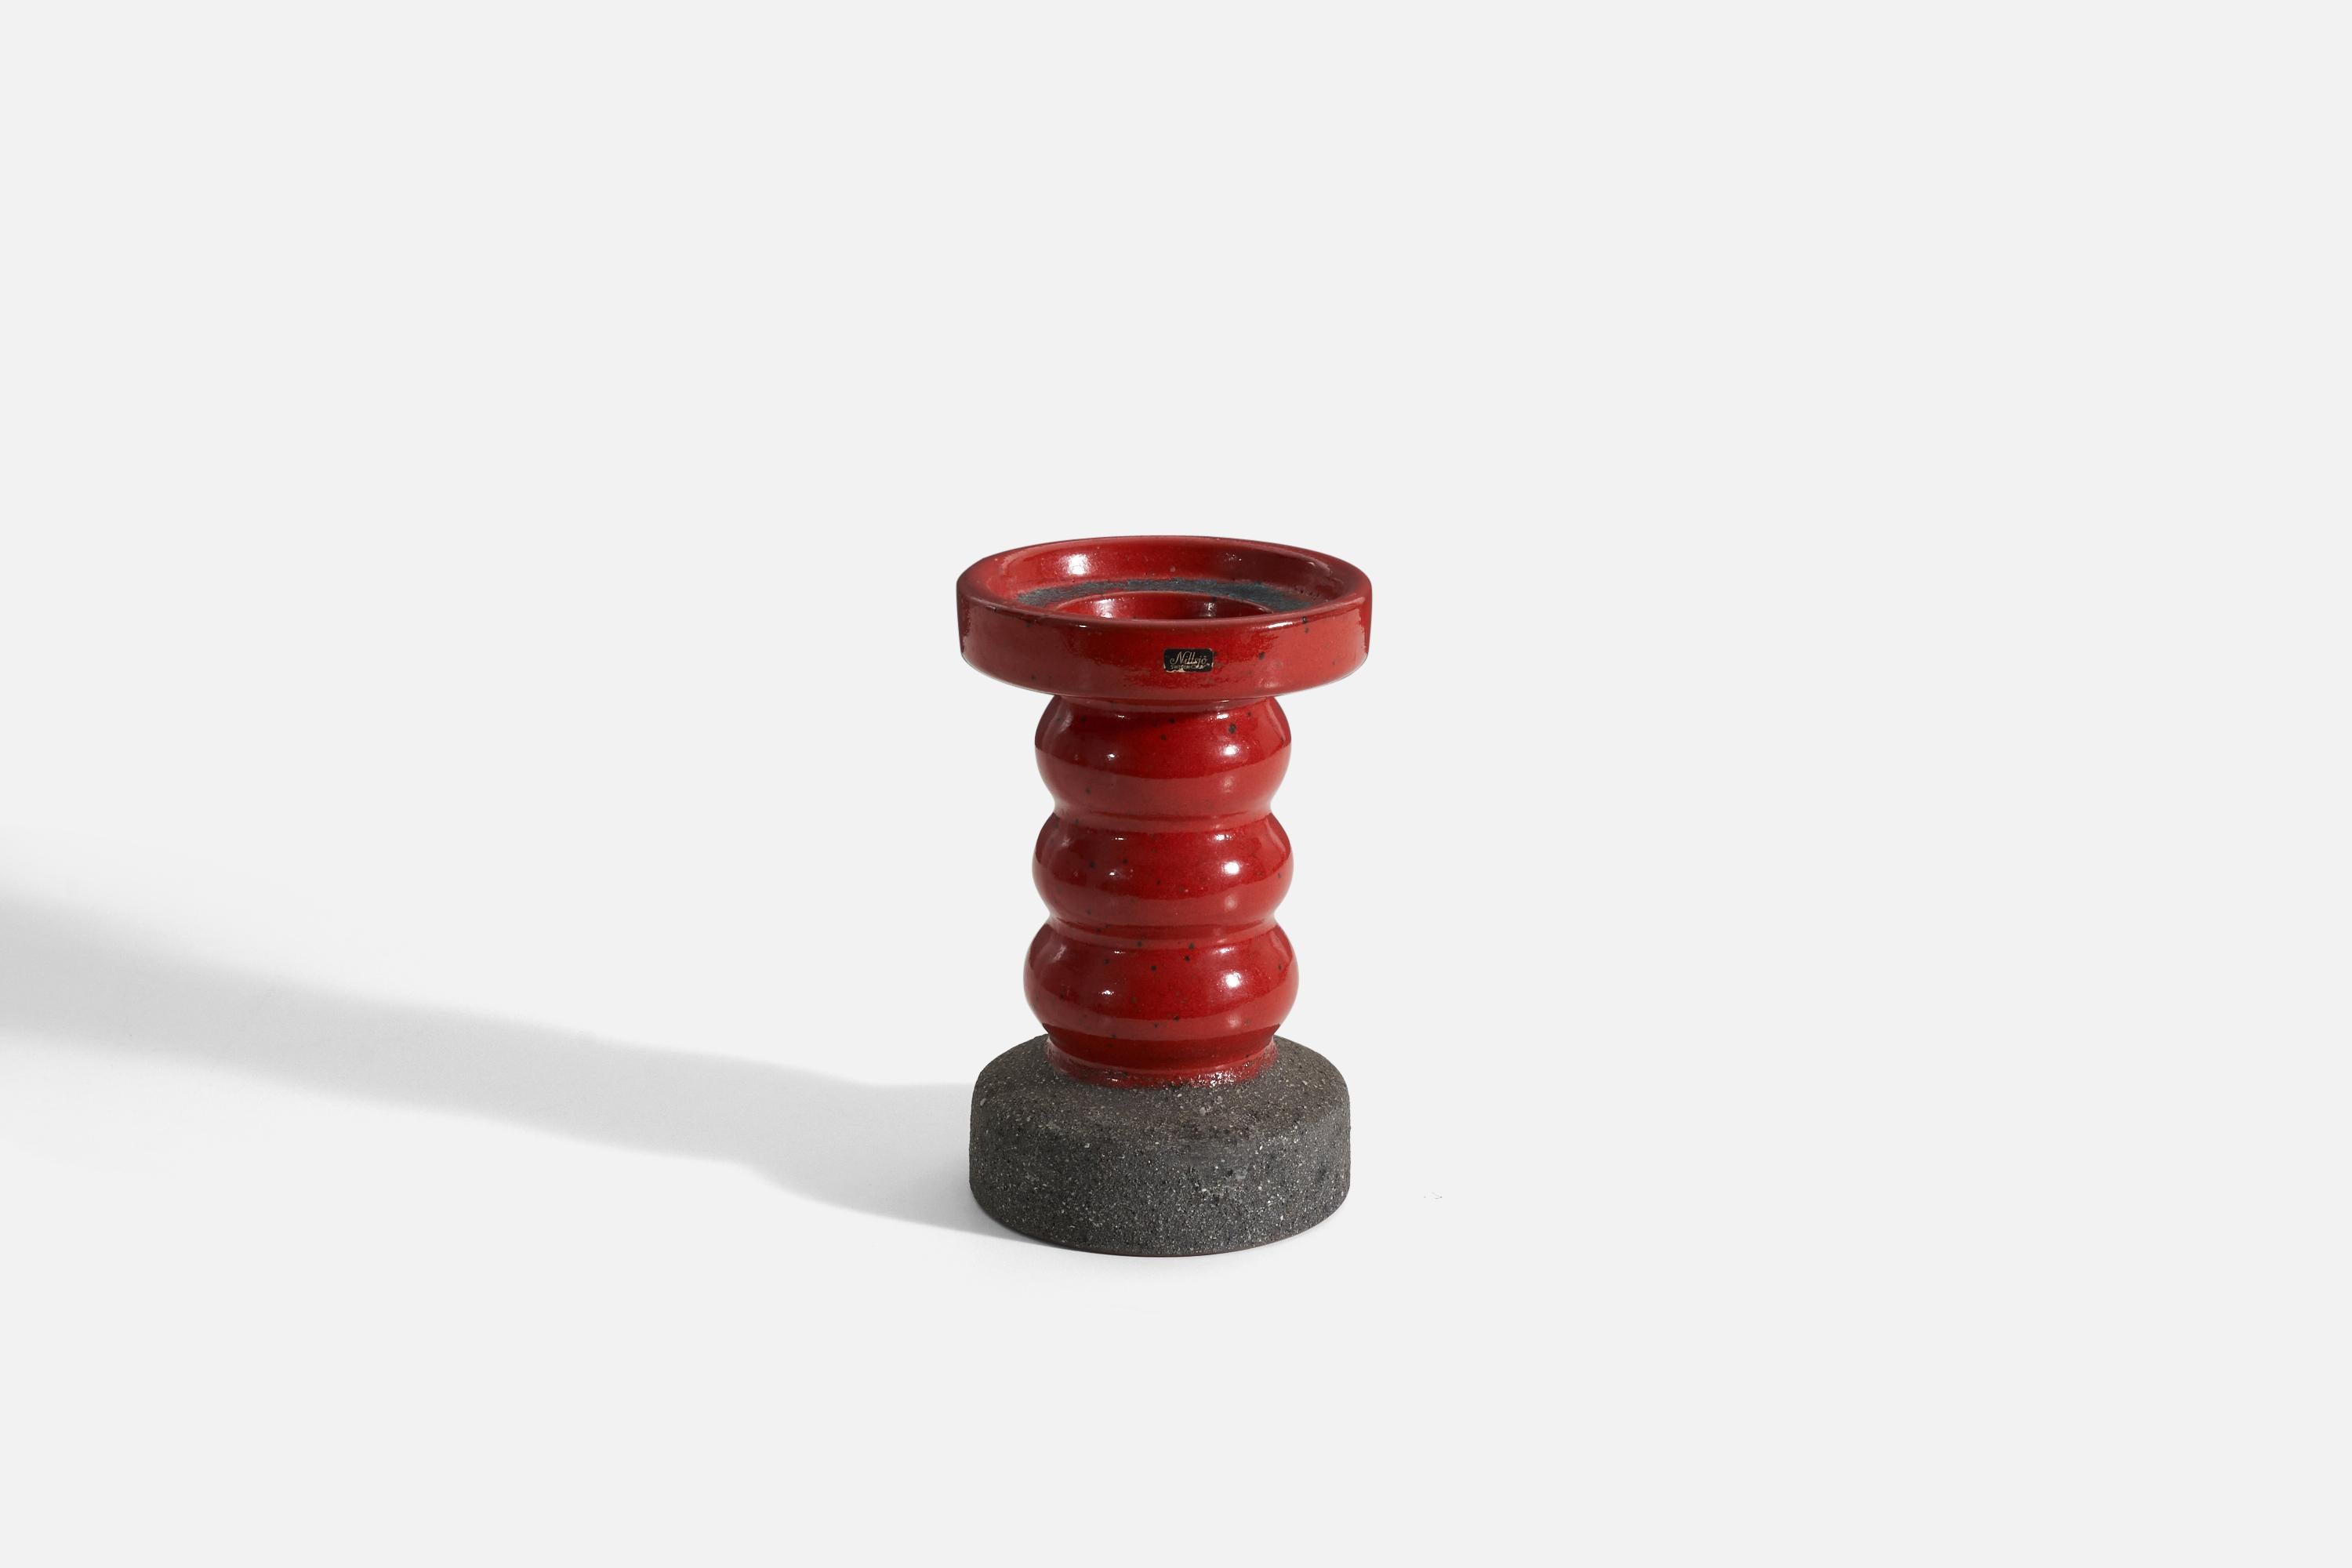 Ein roter, halb glasierter Steingut-Kerzenhalter von Nittsjö, hergestellt in Schweden, 1940er Jahre.
 